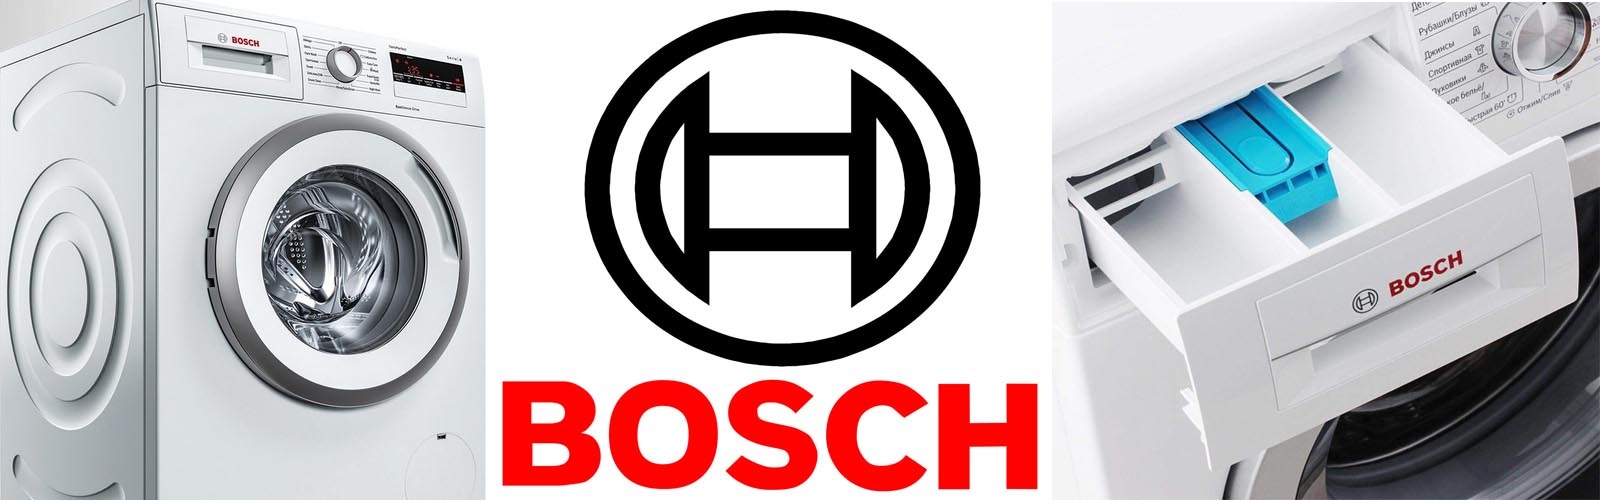 porque a Bosch é tão popular